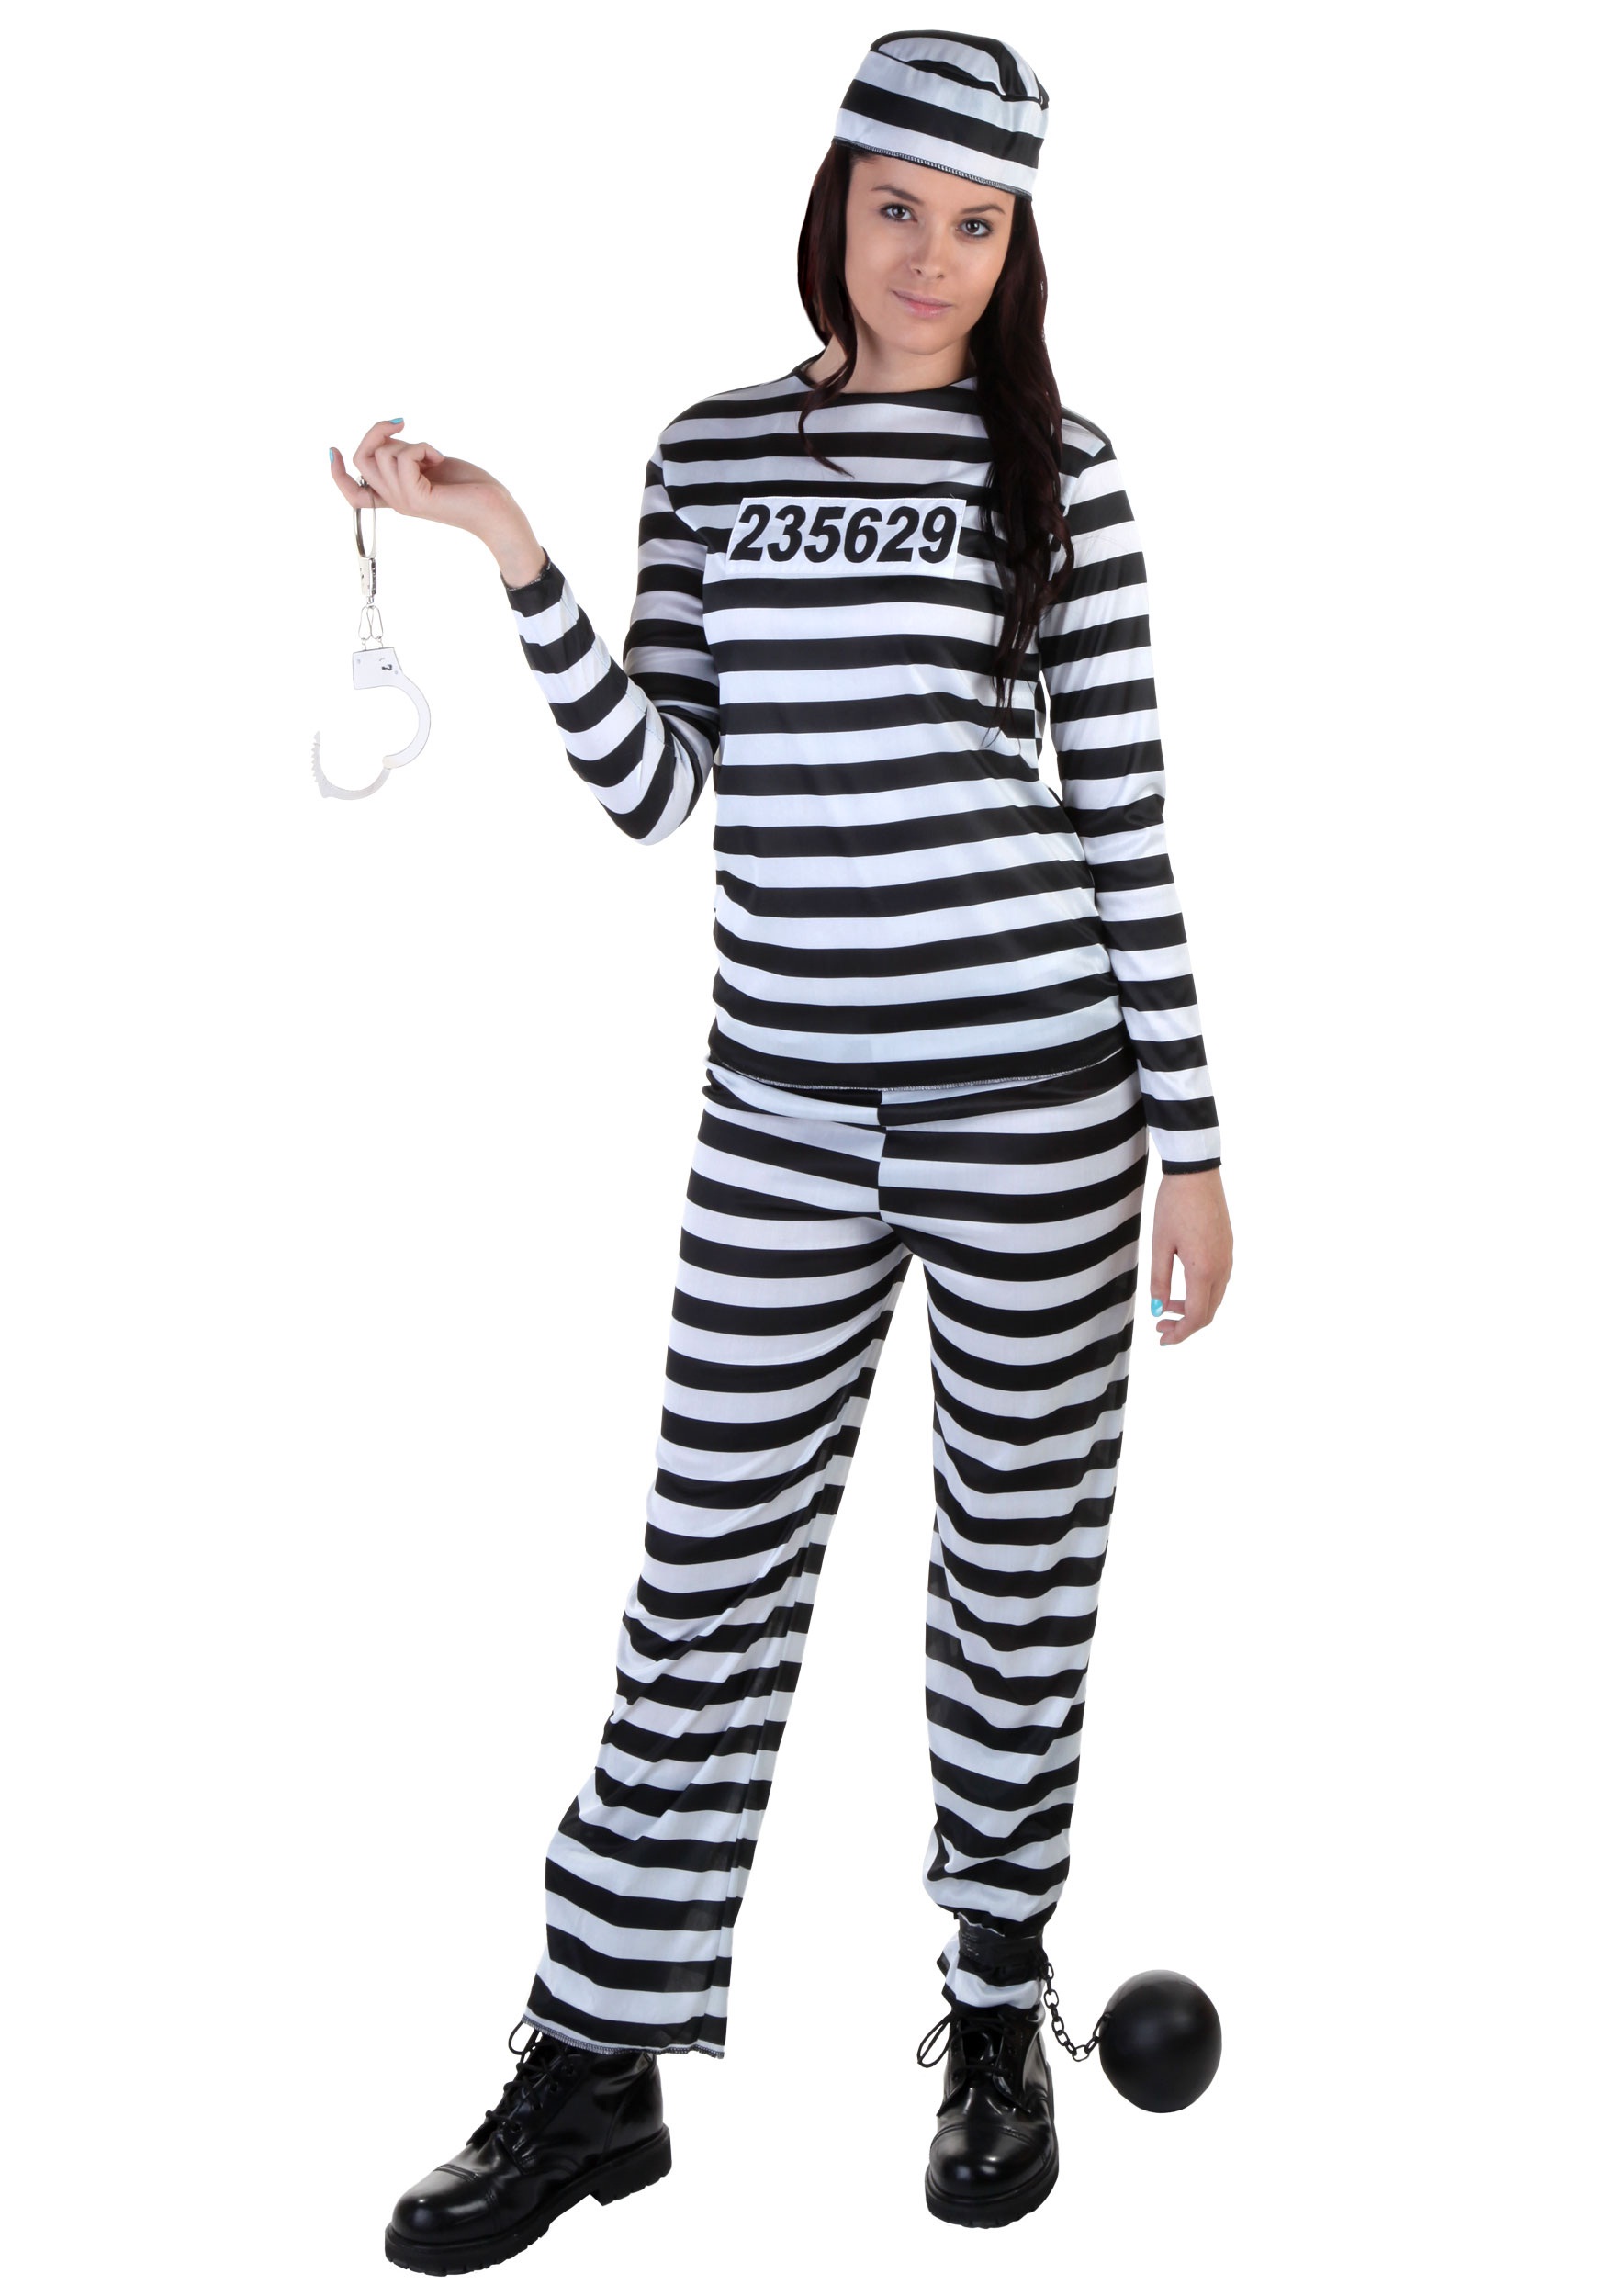 Prisoner Costume Women.